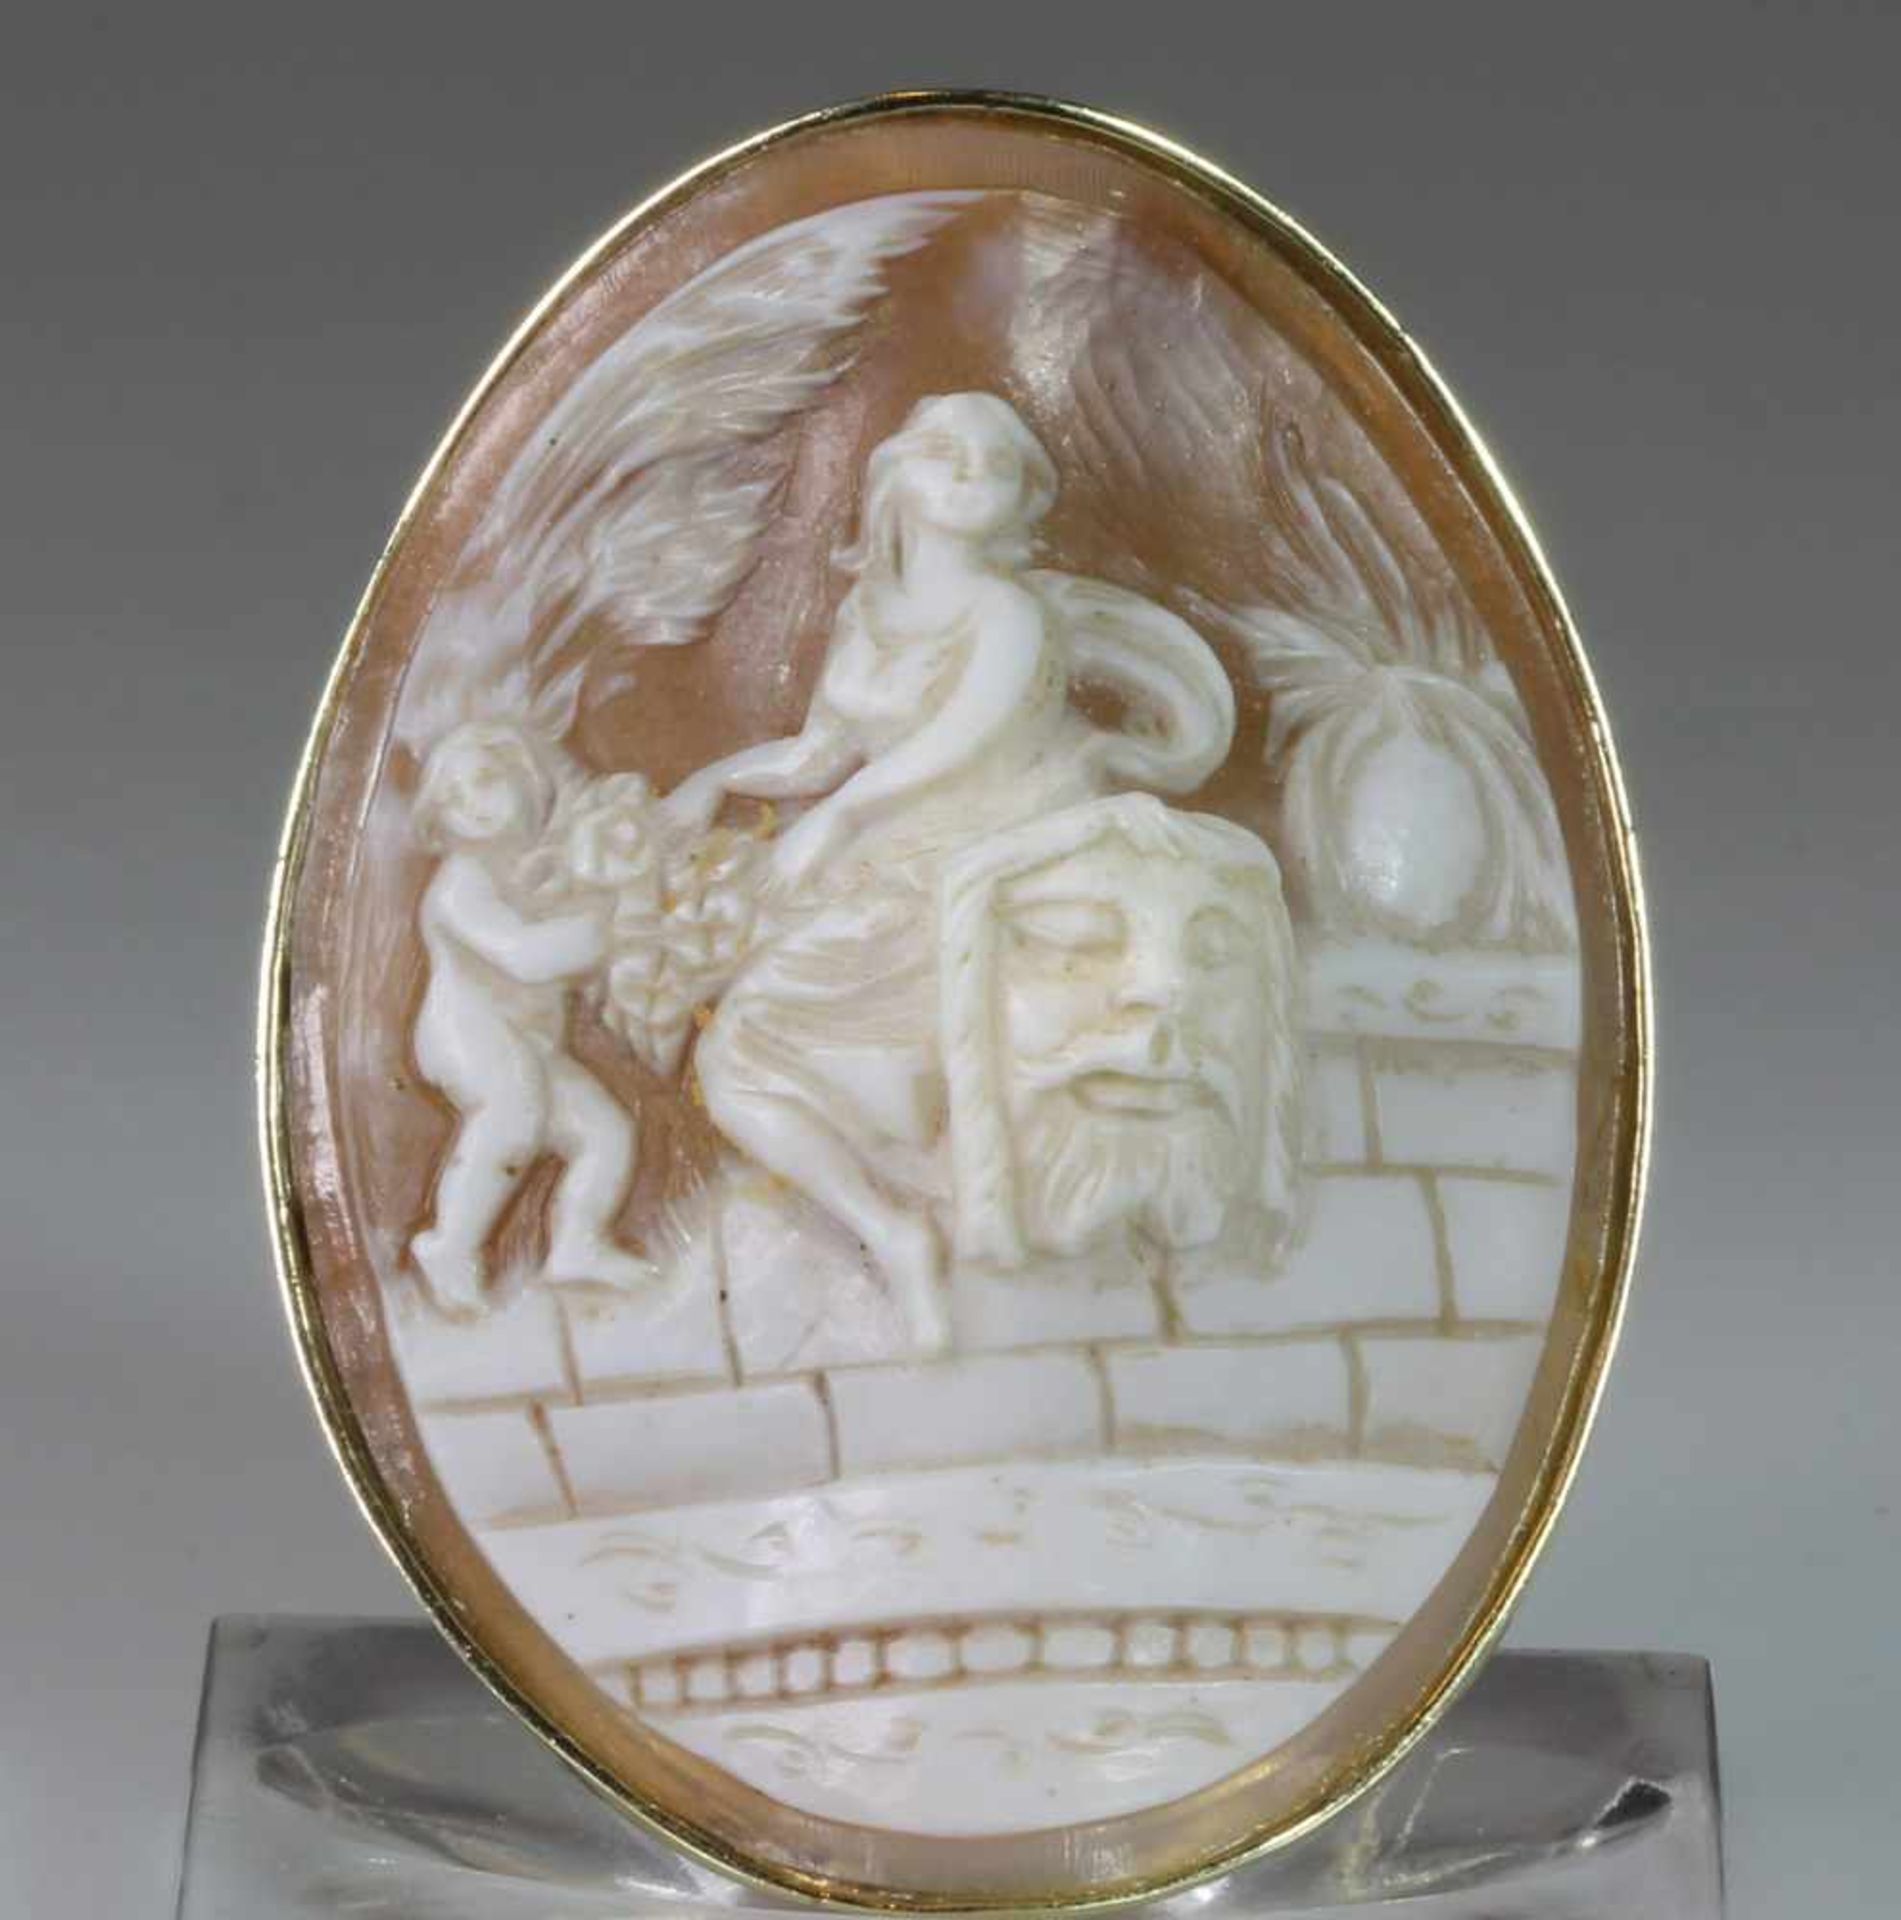 Anhänger/Brosche, GG 585, Muschelkamee, mythologische Darstellung, 17 g, 5.5 x 4.5 cm- - -25.00 % - Bild 2 aus 2